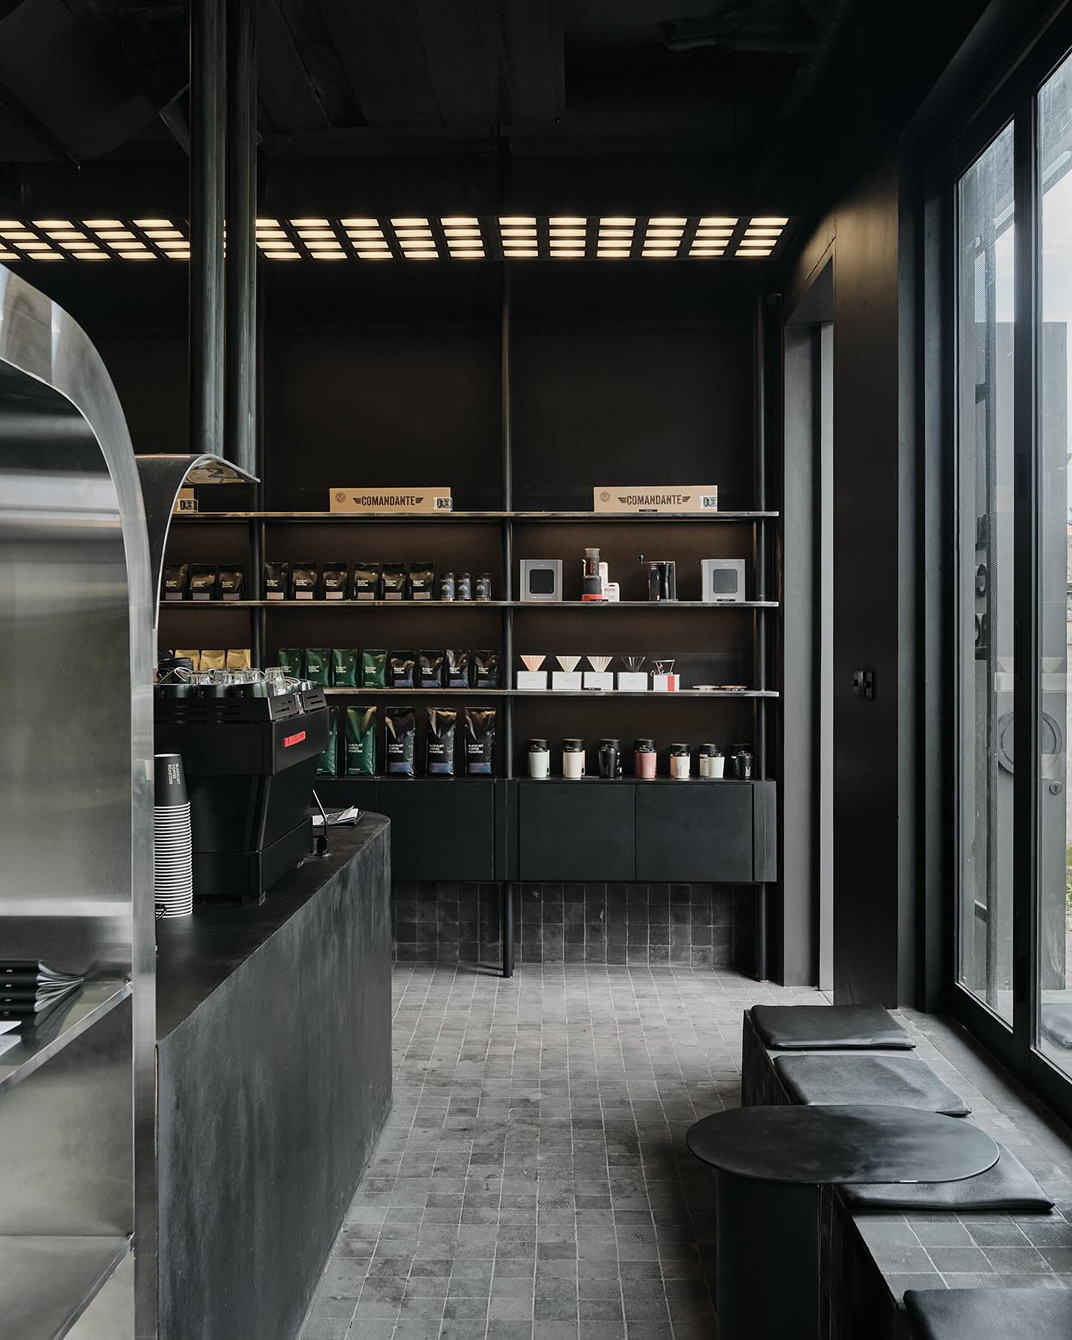 黑色调咖啡店空间设计blacklist coffee 巴厘岛 深圳 上海 北京 广州 武汉 咖啡店 餐饮商业 logo设计 vi设计 空间设计